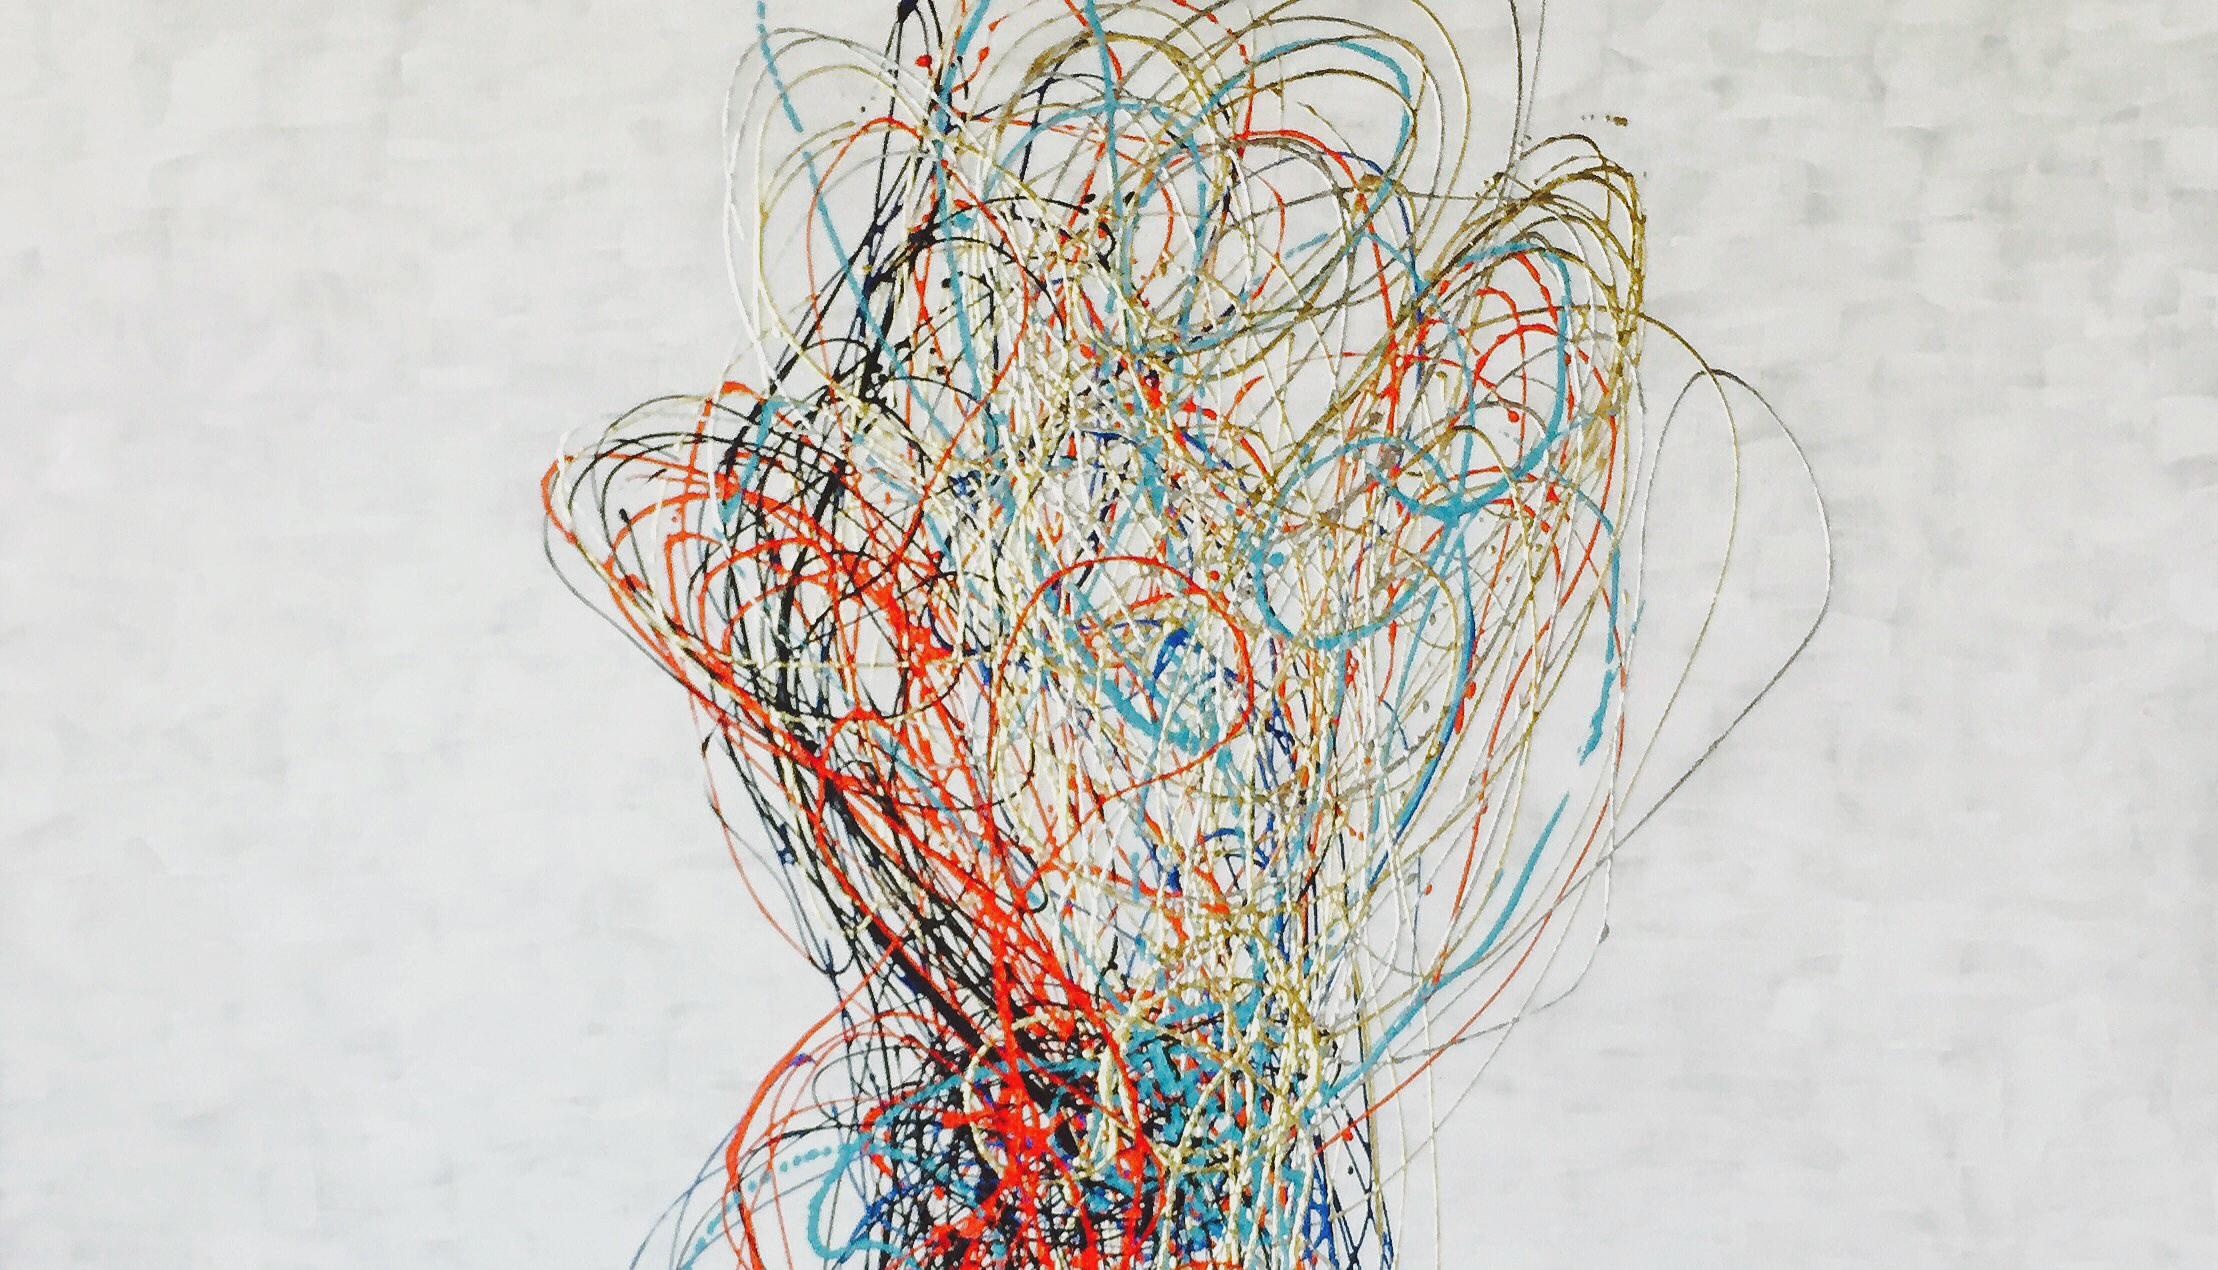 Peinture - Balloon, peinture abstraite, artiste américain, oeil, techniques mixtes - Abstrait Painting par Michael O'Briant